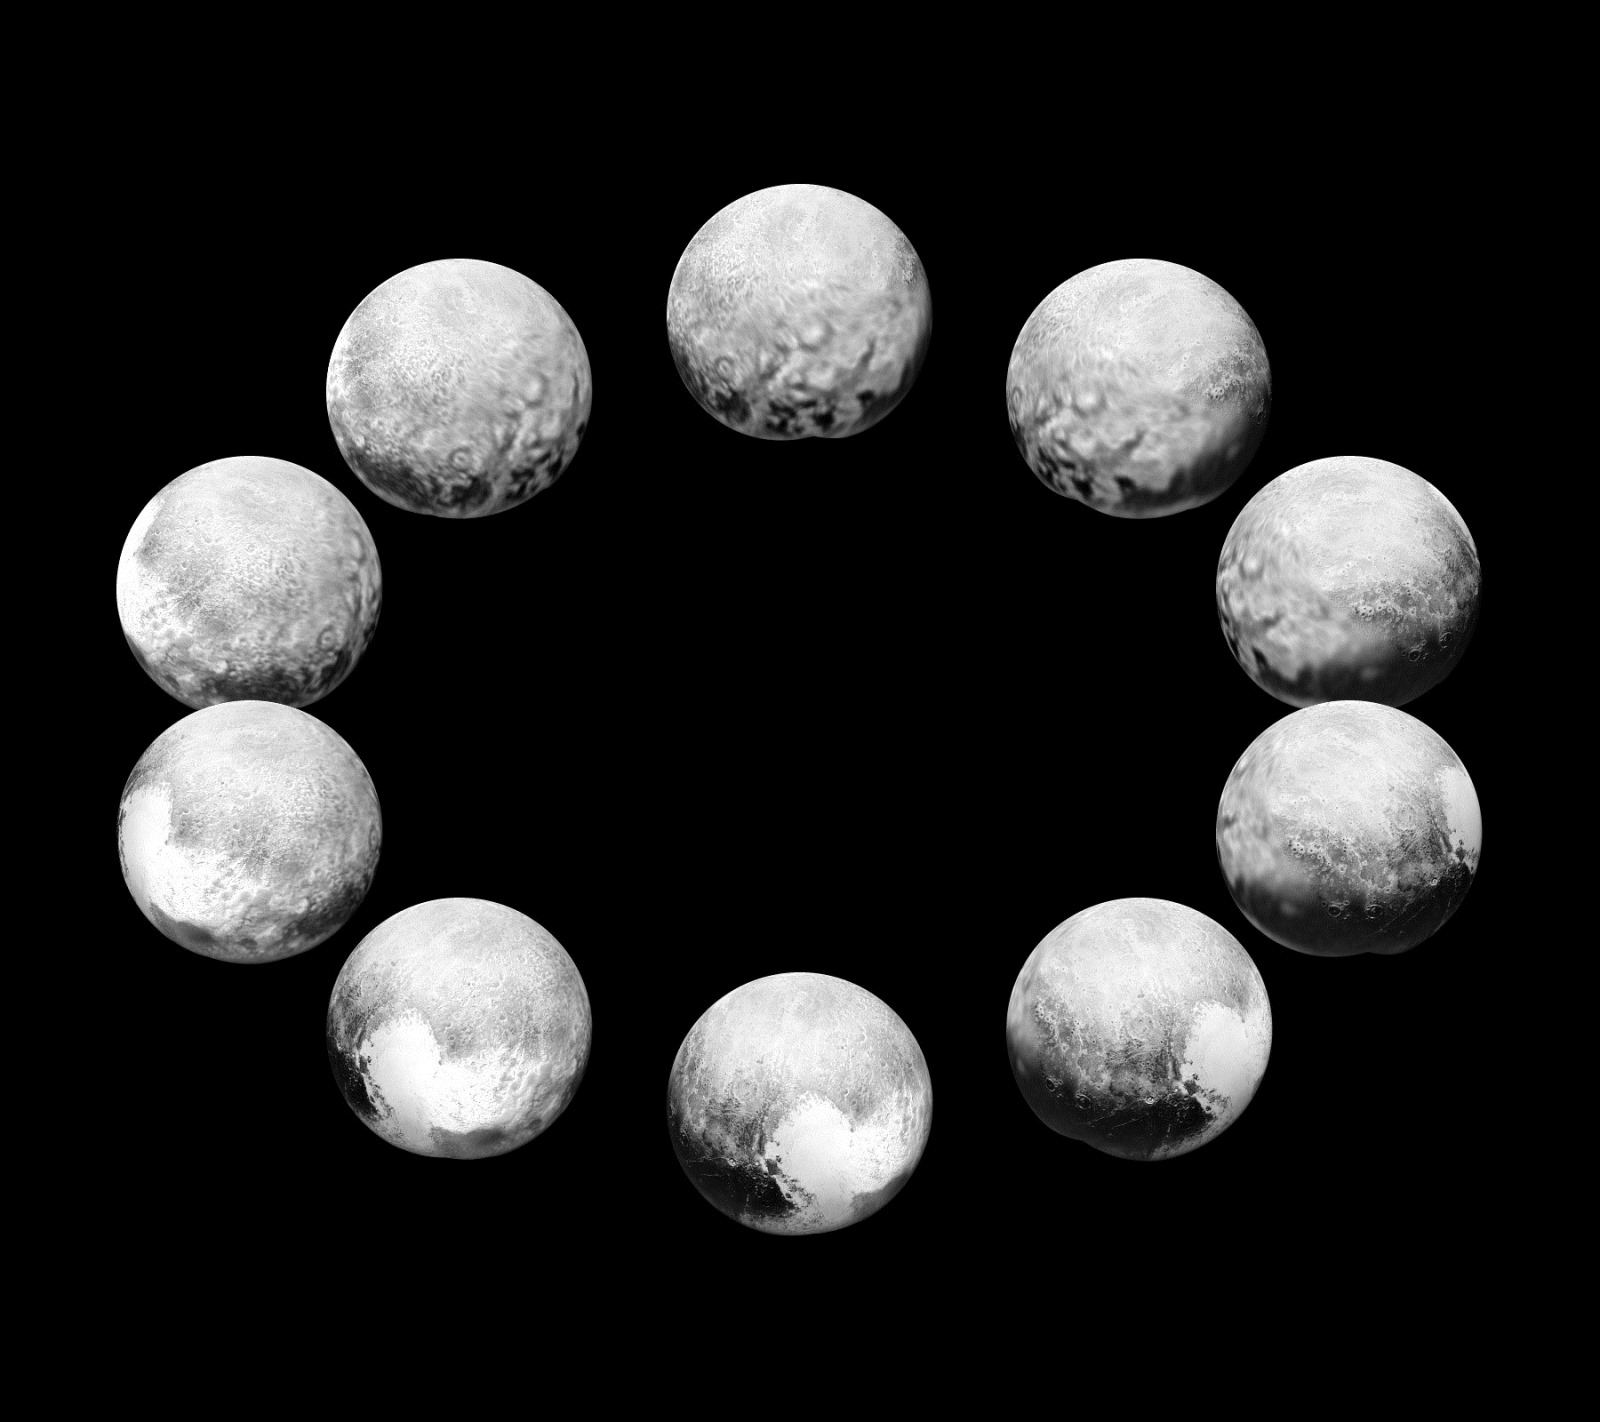 Un jour complet de Pluton et de sa plus grande lune Charon